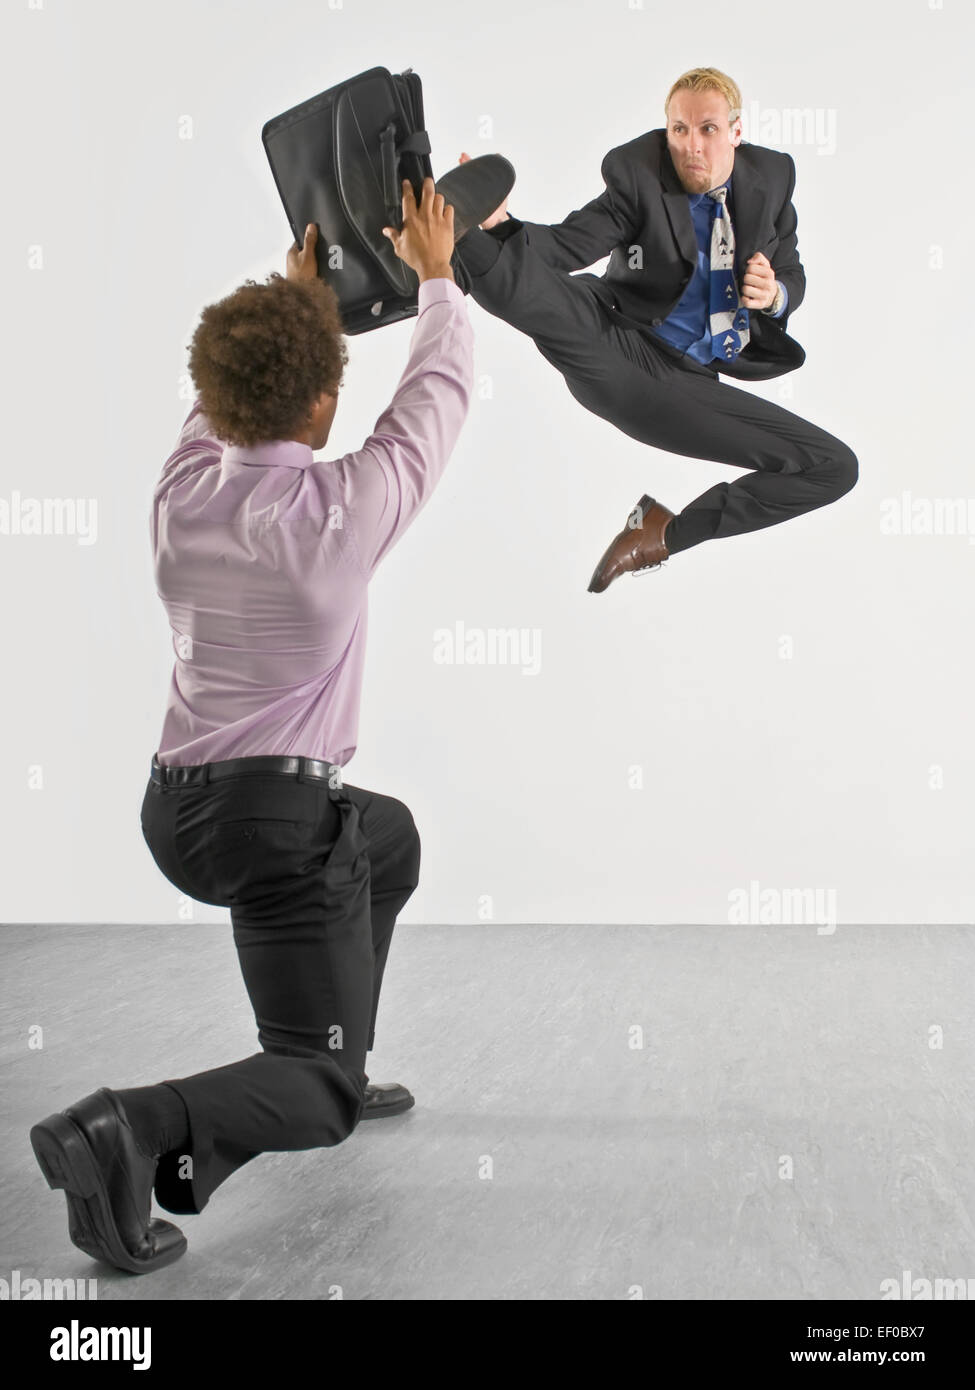 Dos personas de negocios combates Foto de stock